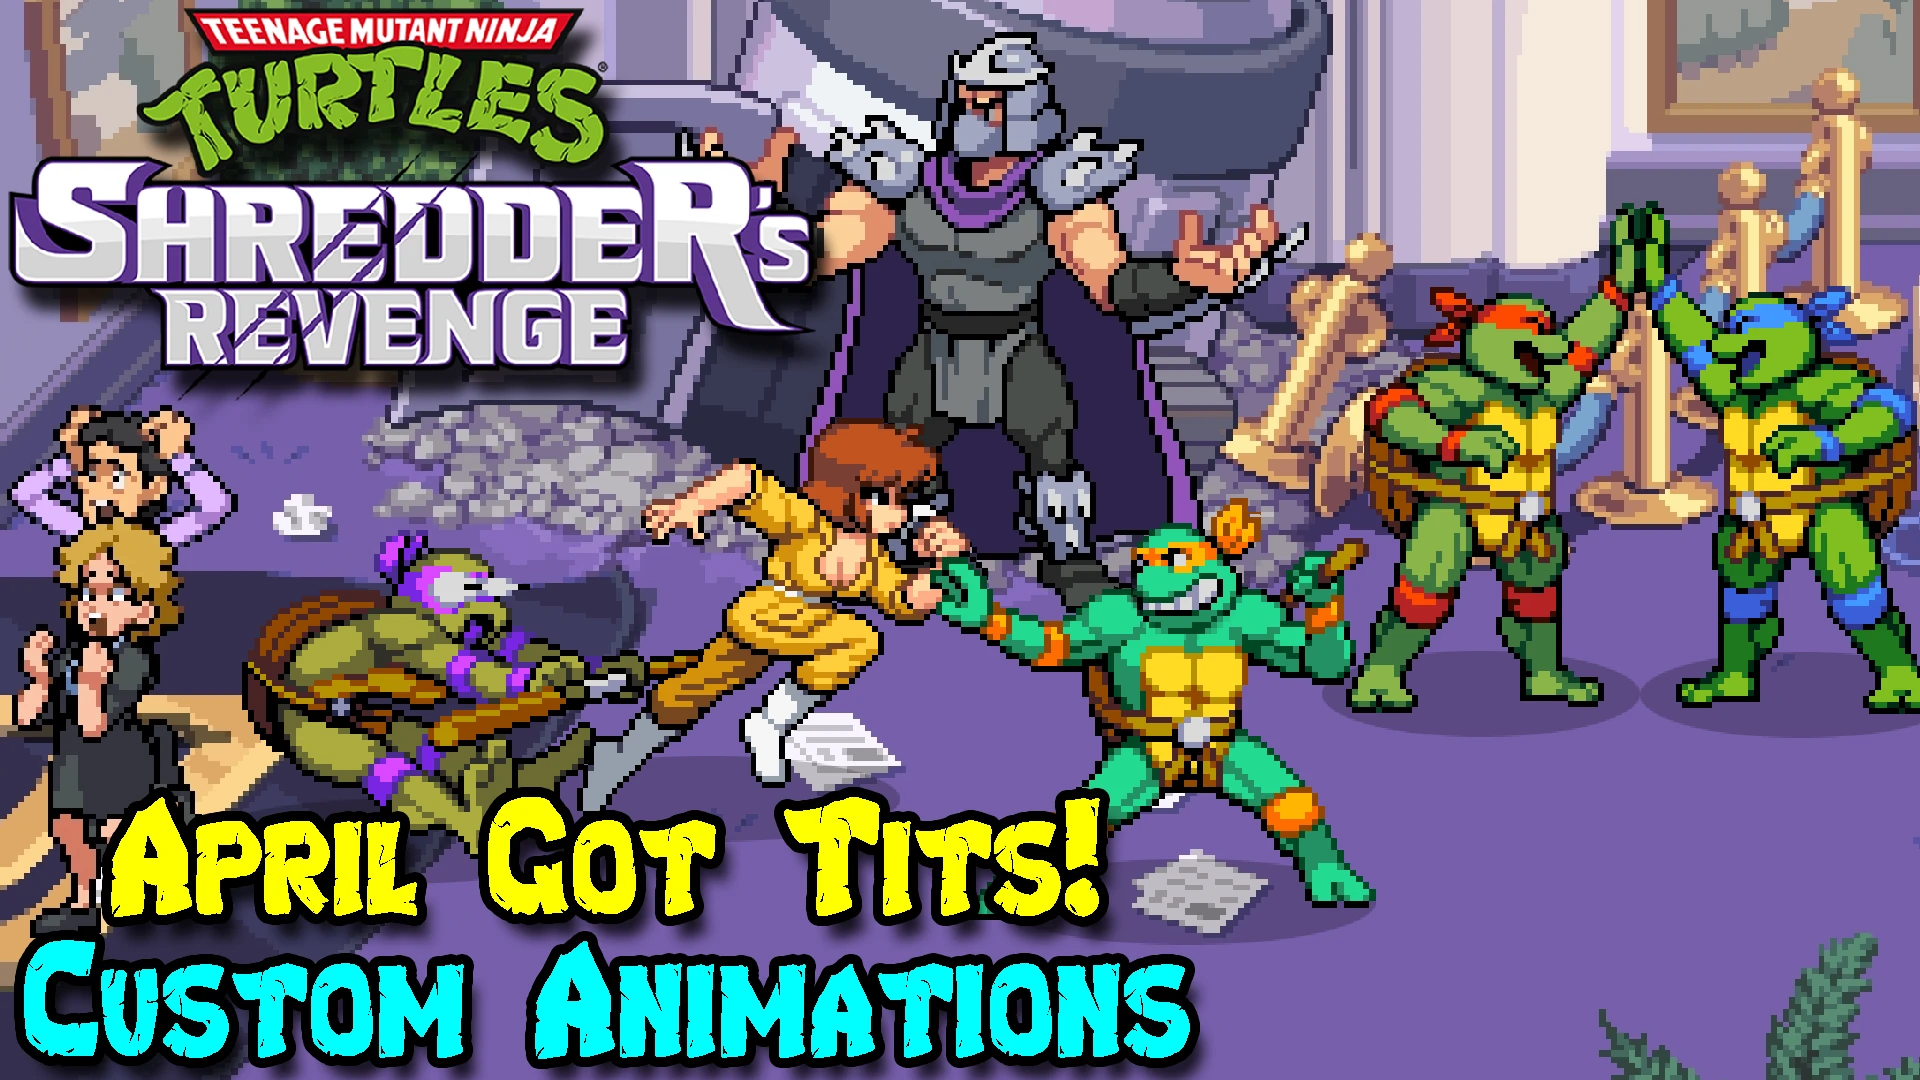 Tmnt shredder android. TMNT: Shredder's Revenge Эйприл. Шреддер Черепашки ниндзя. TMNT Shredder Revenge Sprites. TMNT Shredder Revenge April Mod.